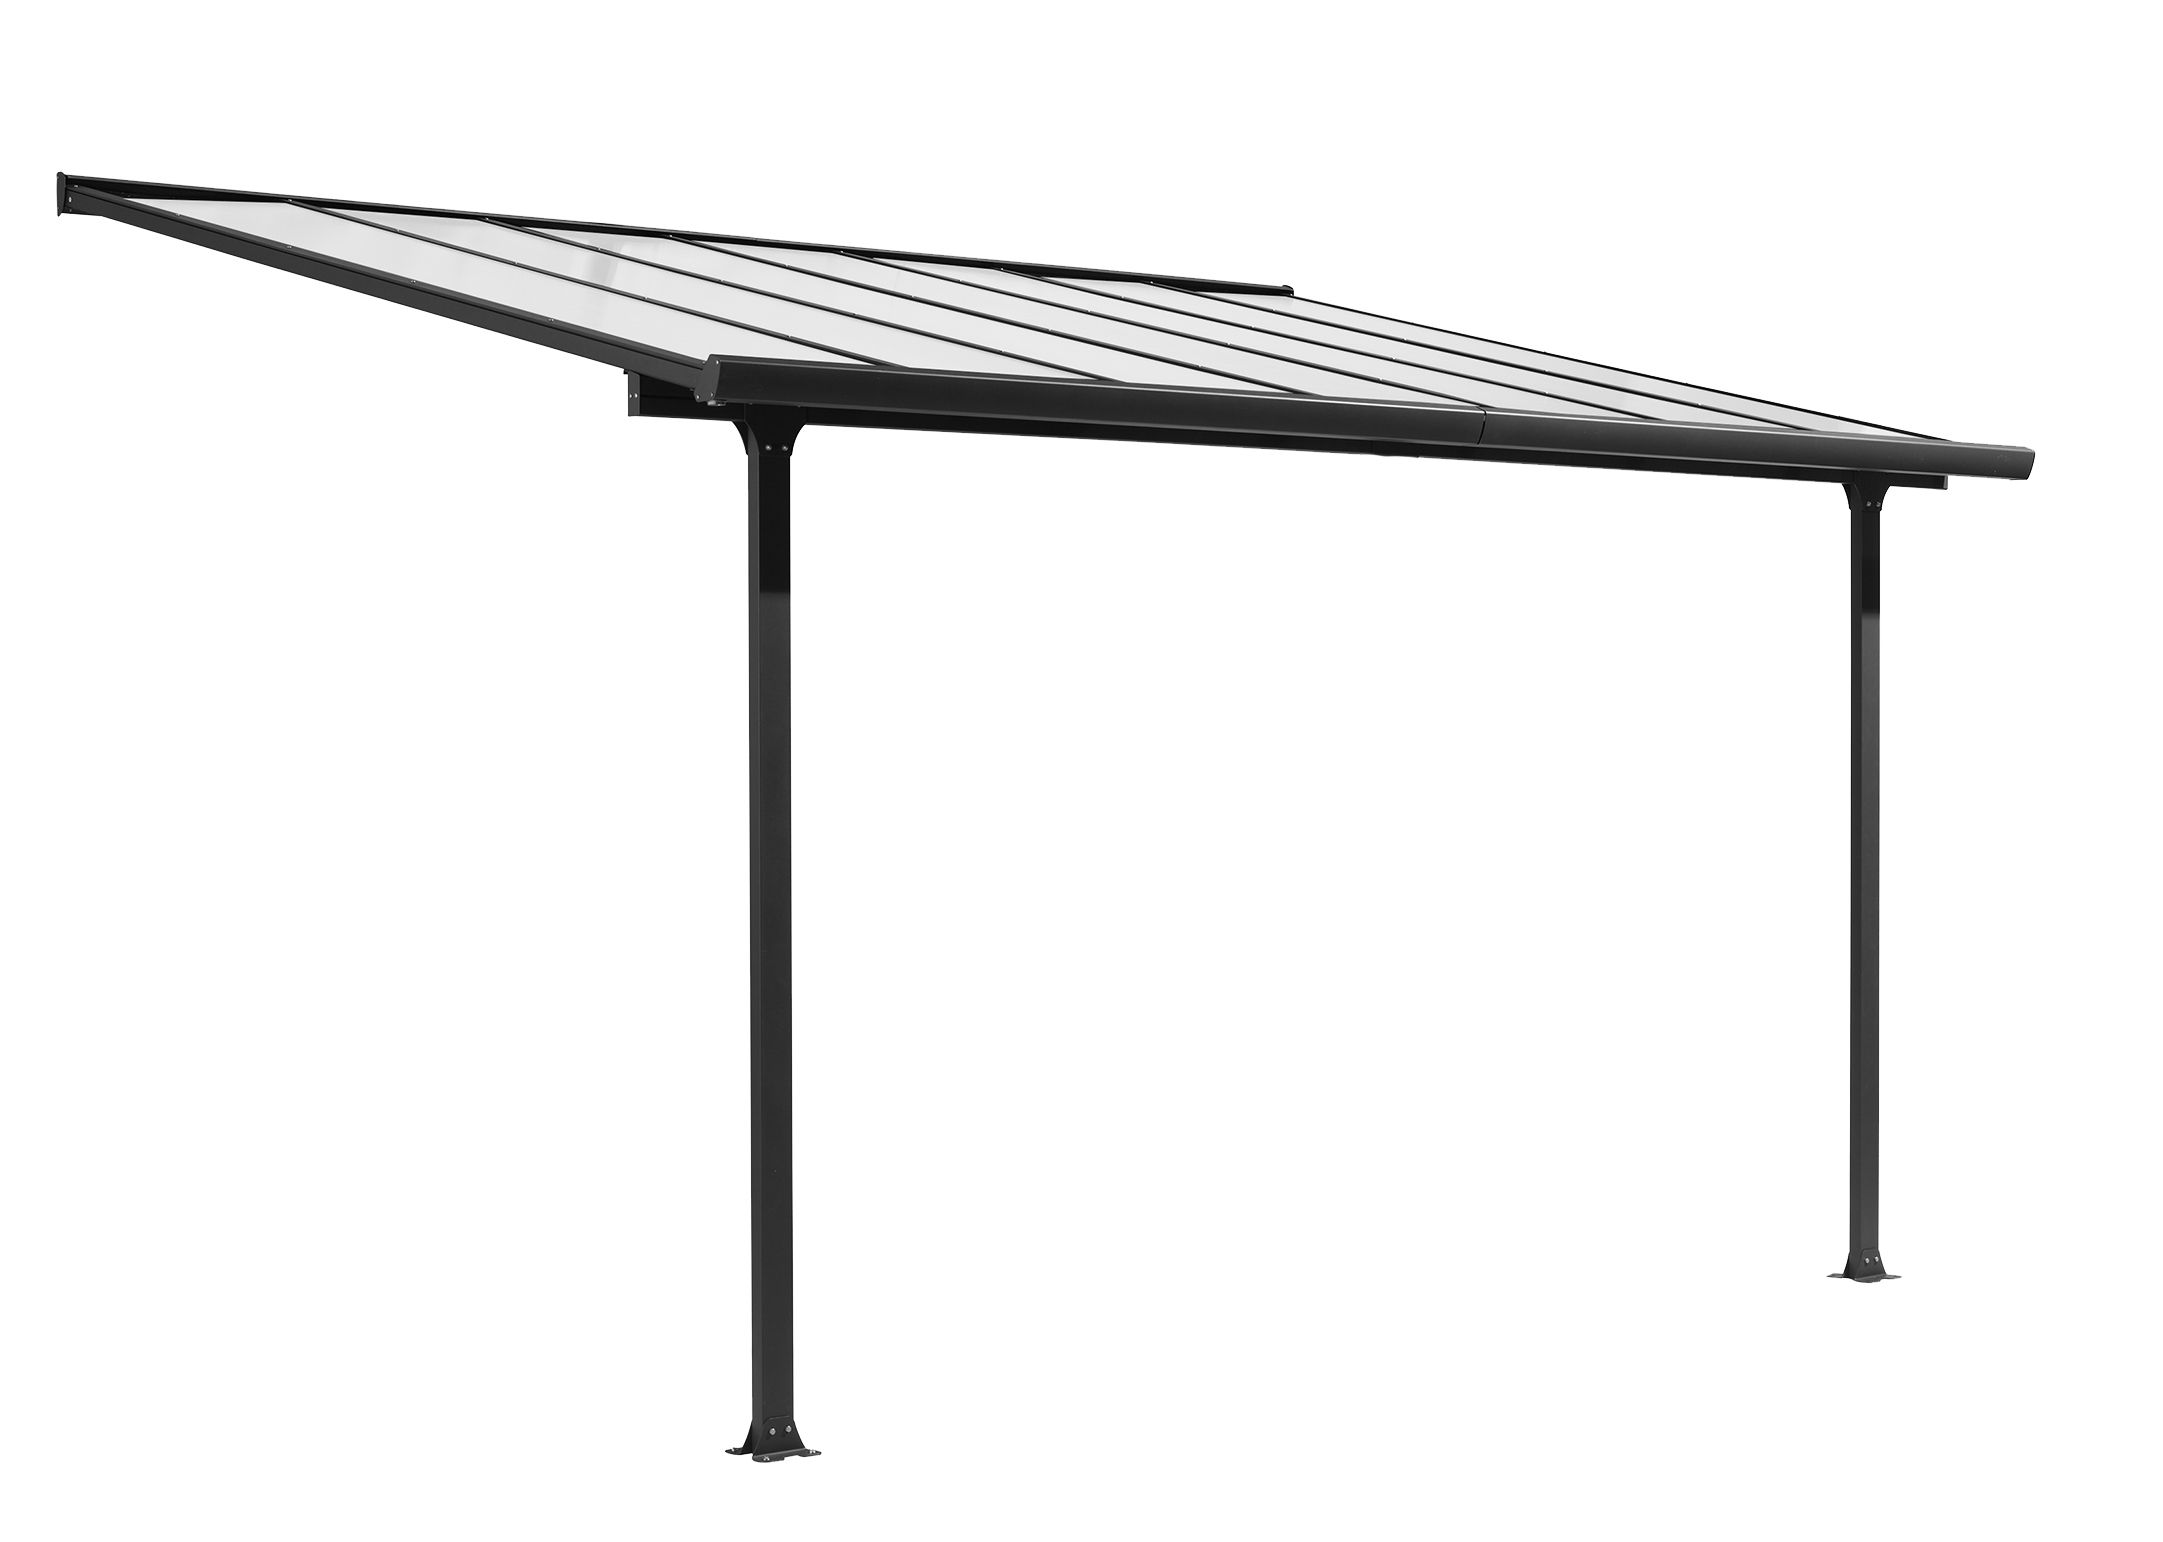 Toit terrasse Aluminium avec rideau d'ombrage extensible et toit plaques en Polycarbonate de 6 mm